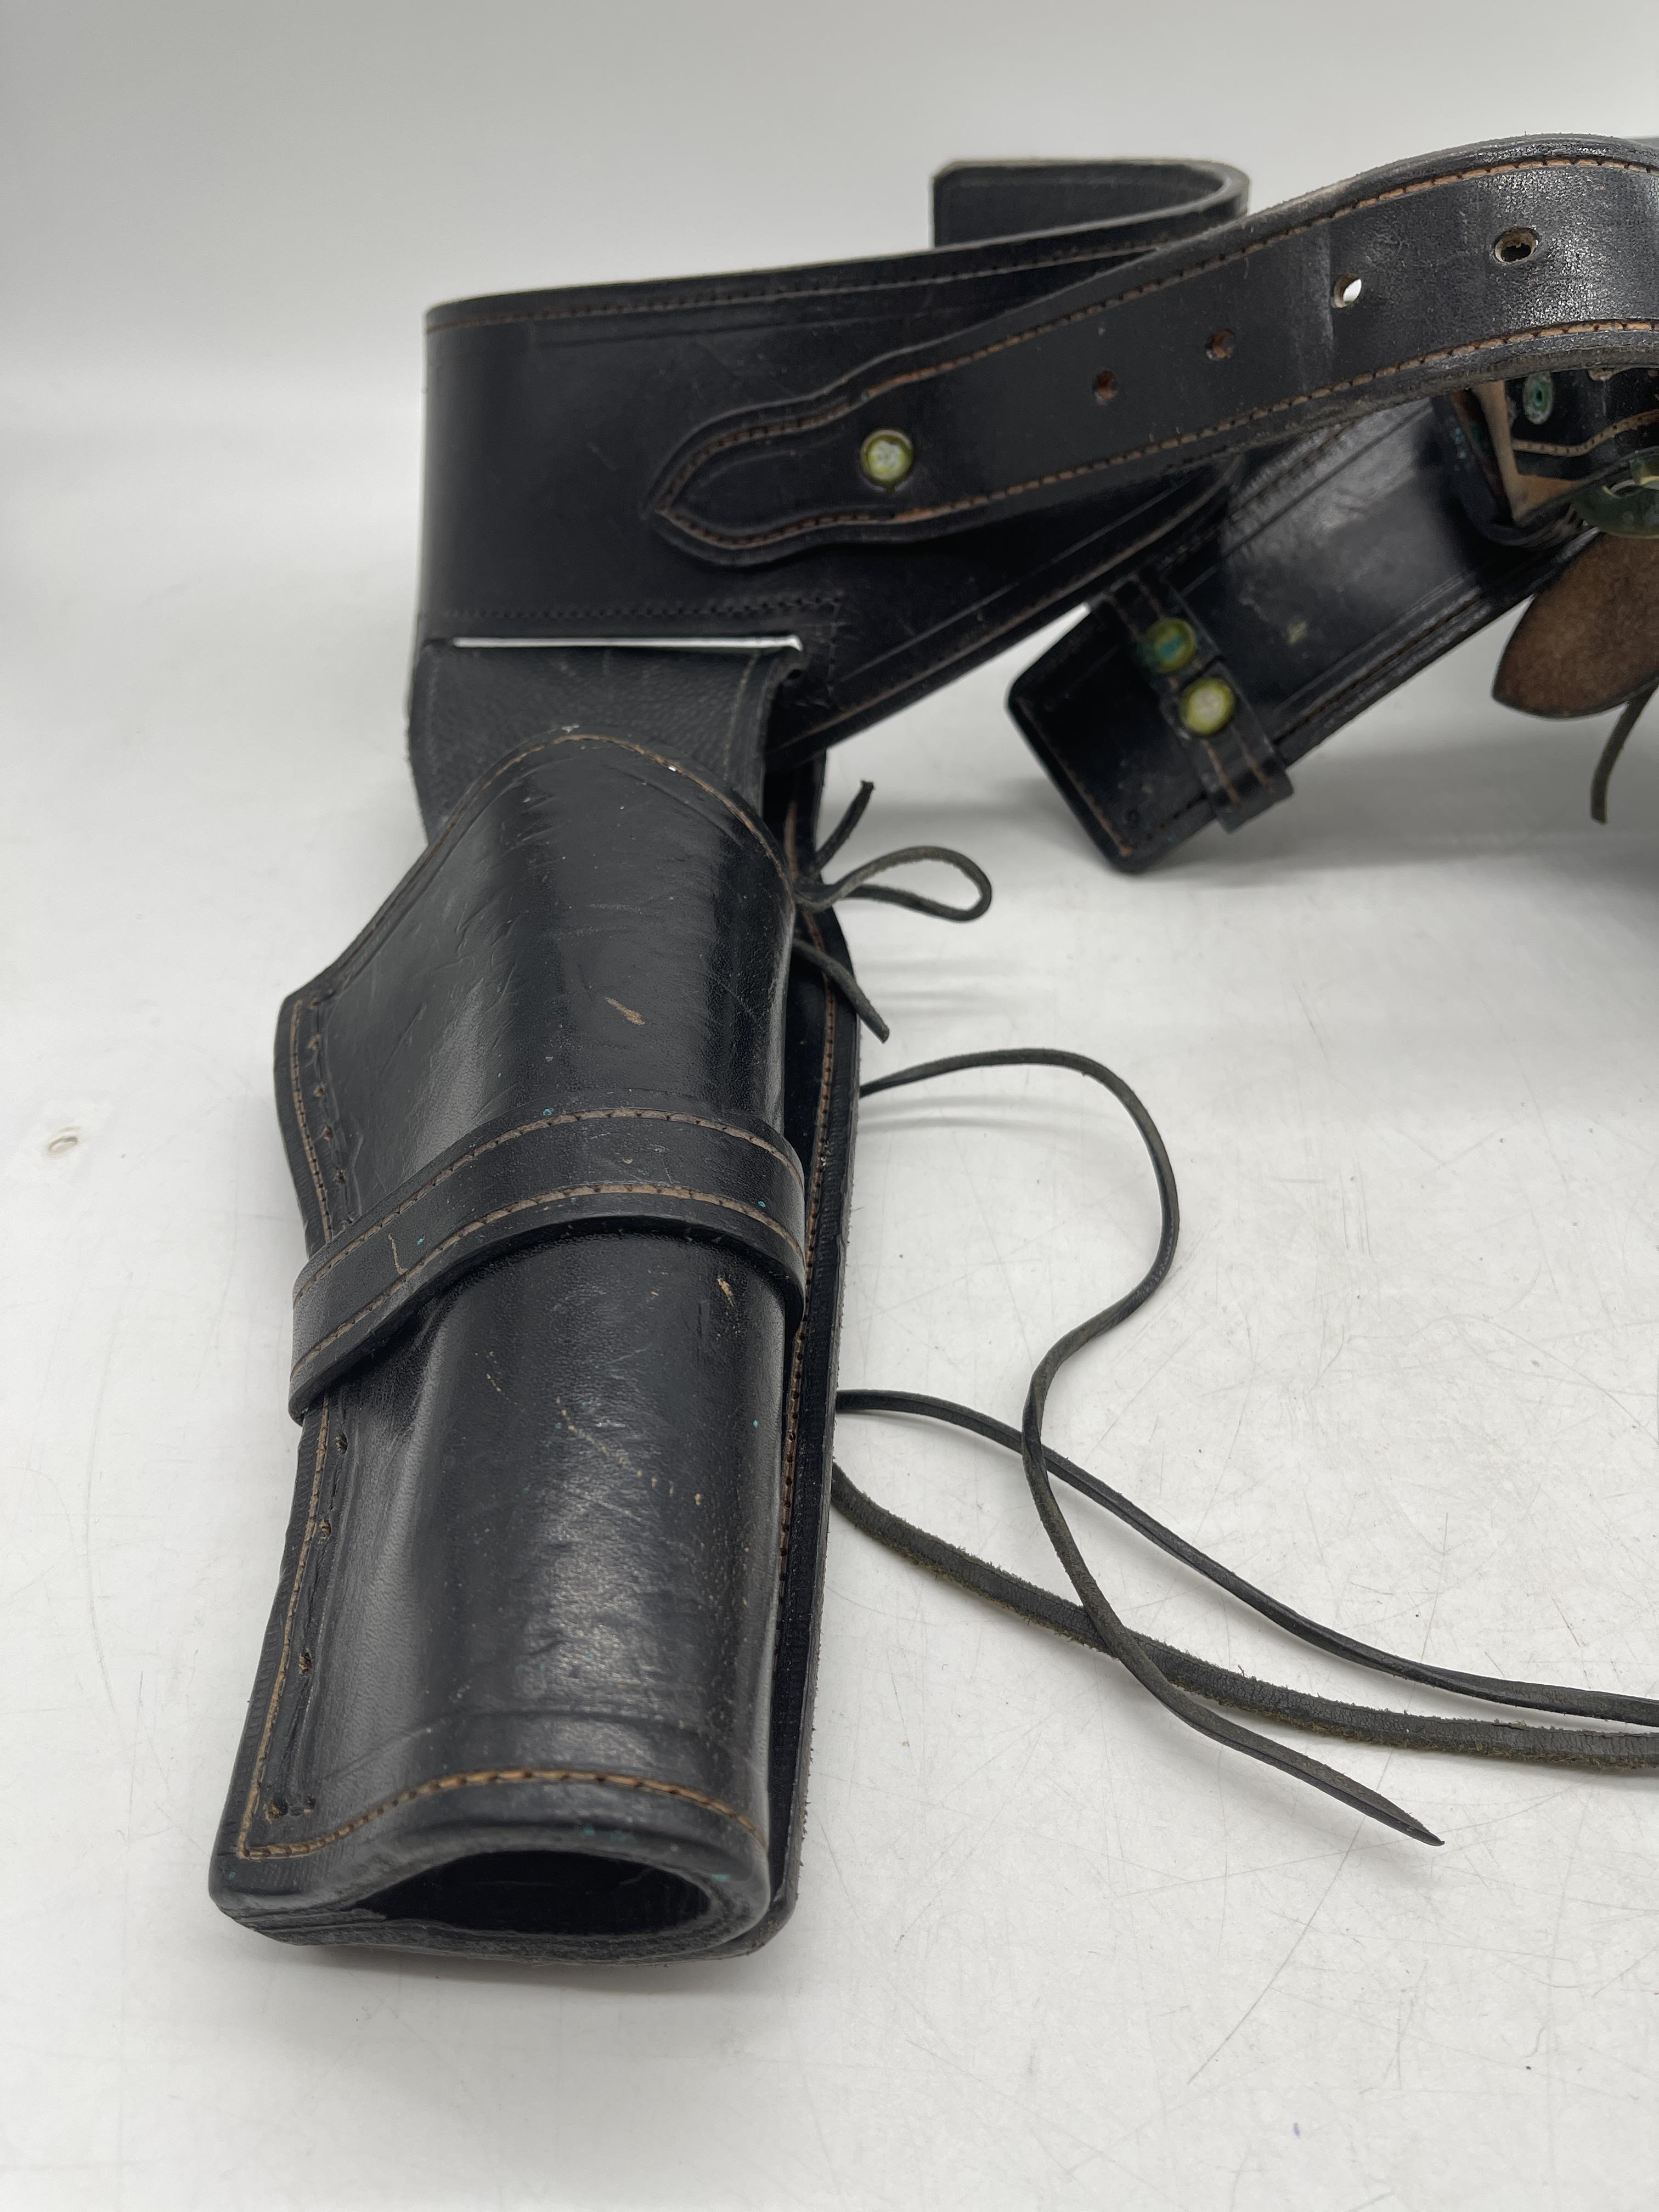 Original Colt 45 Belt and Holster - Image 5 of 9